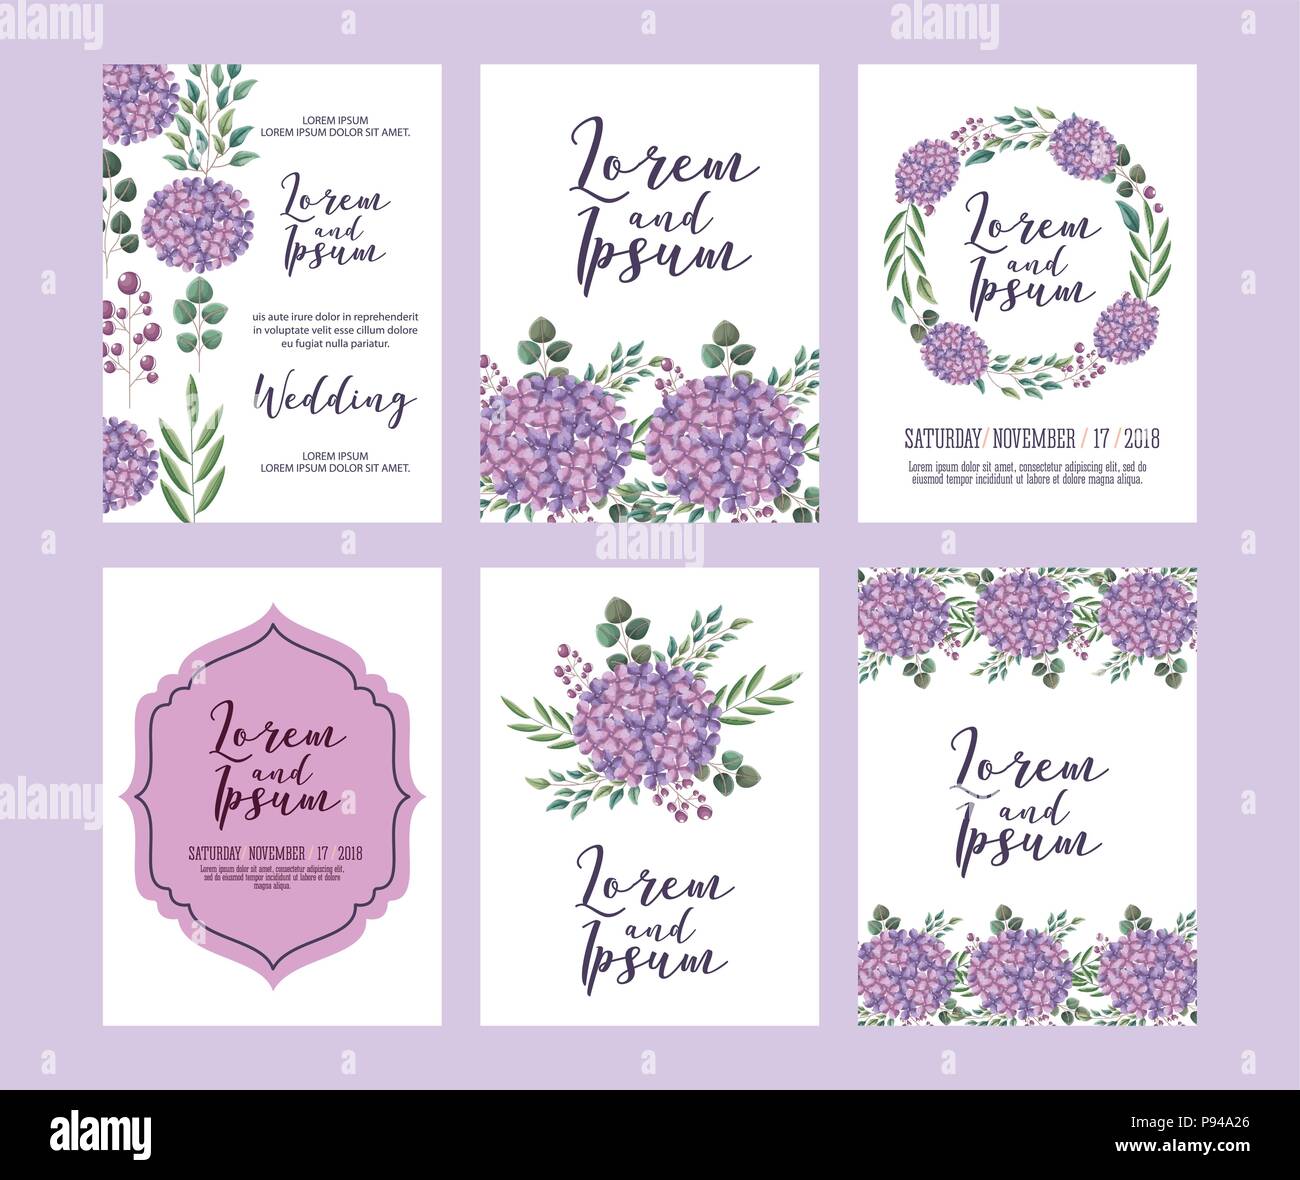 Hochzeit Blumen Vorlage Sammlung Karten Blumen Design Vector Illustration Stock Vektorgrafik Alamy